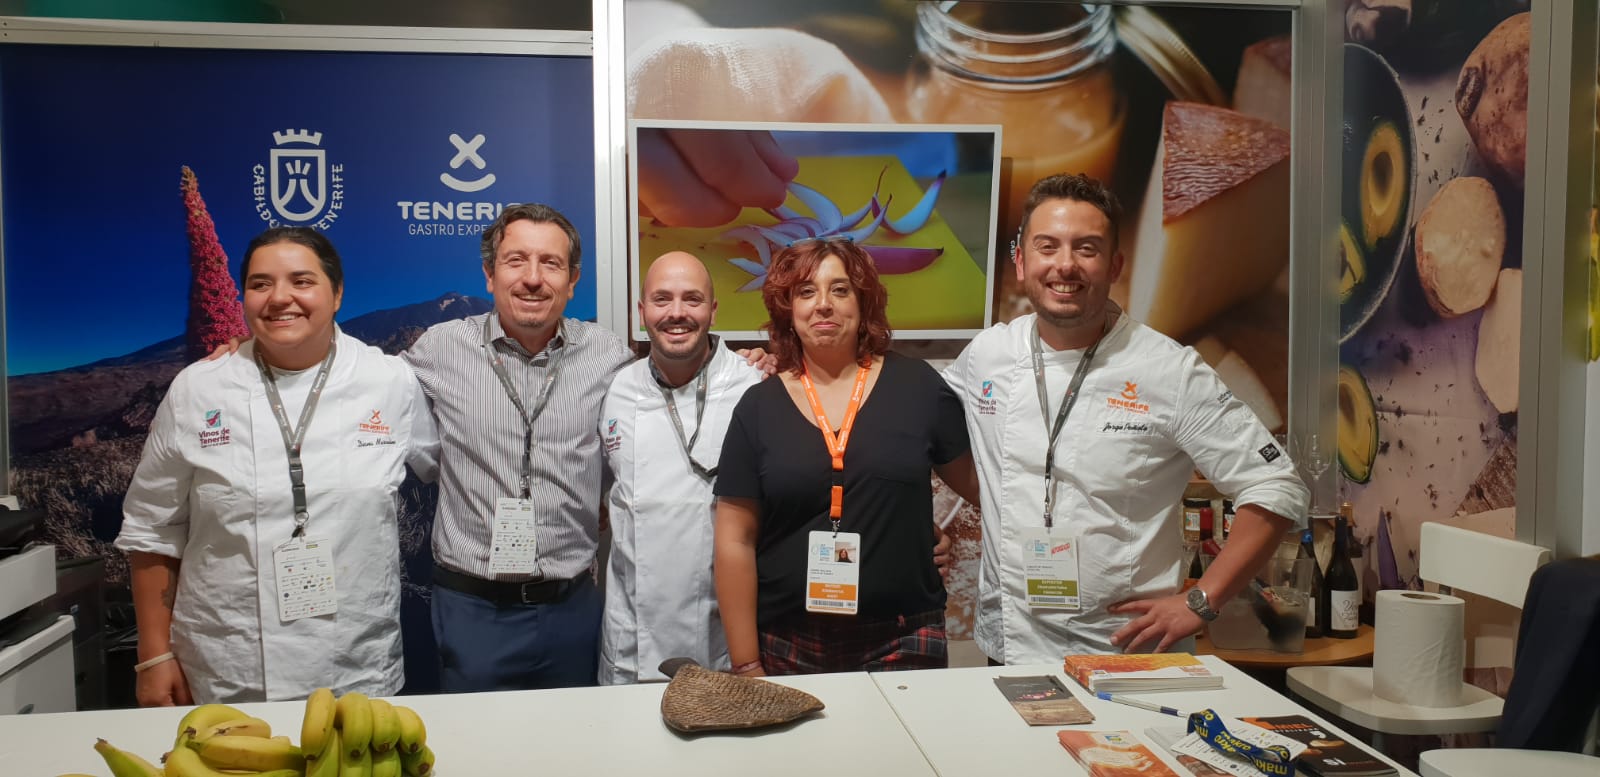 Tenerife fascina con sus chefs y  productos en San Sebastián Gastronomika